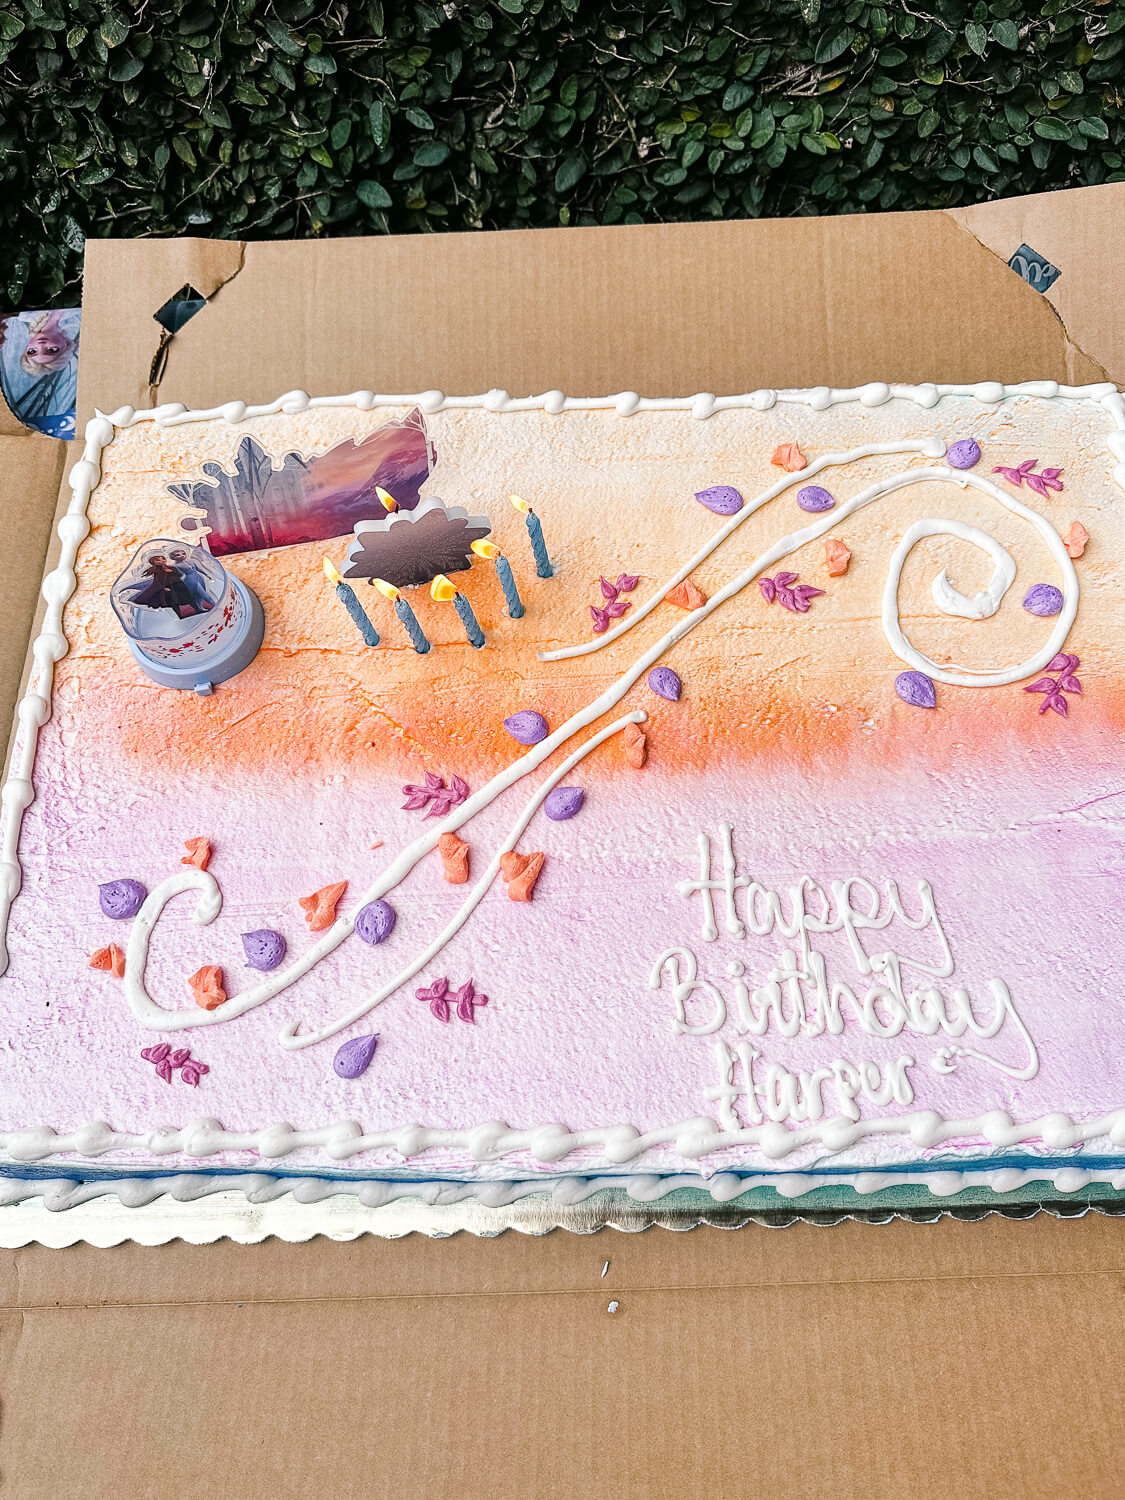 frozen themed birthday cake for little girl